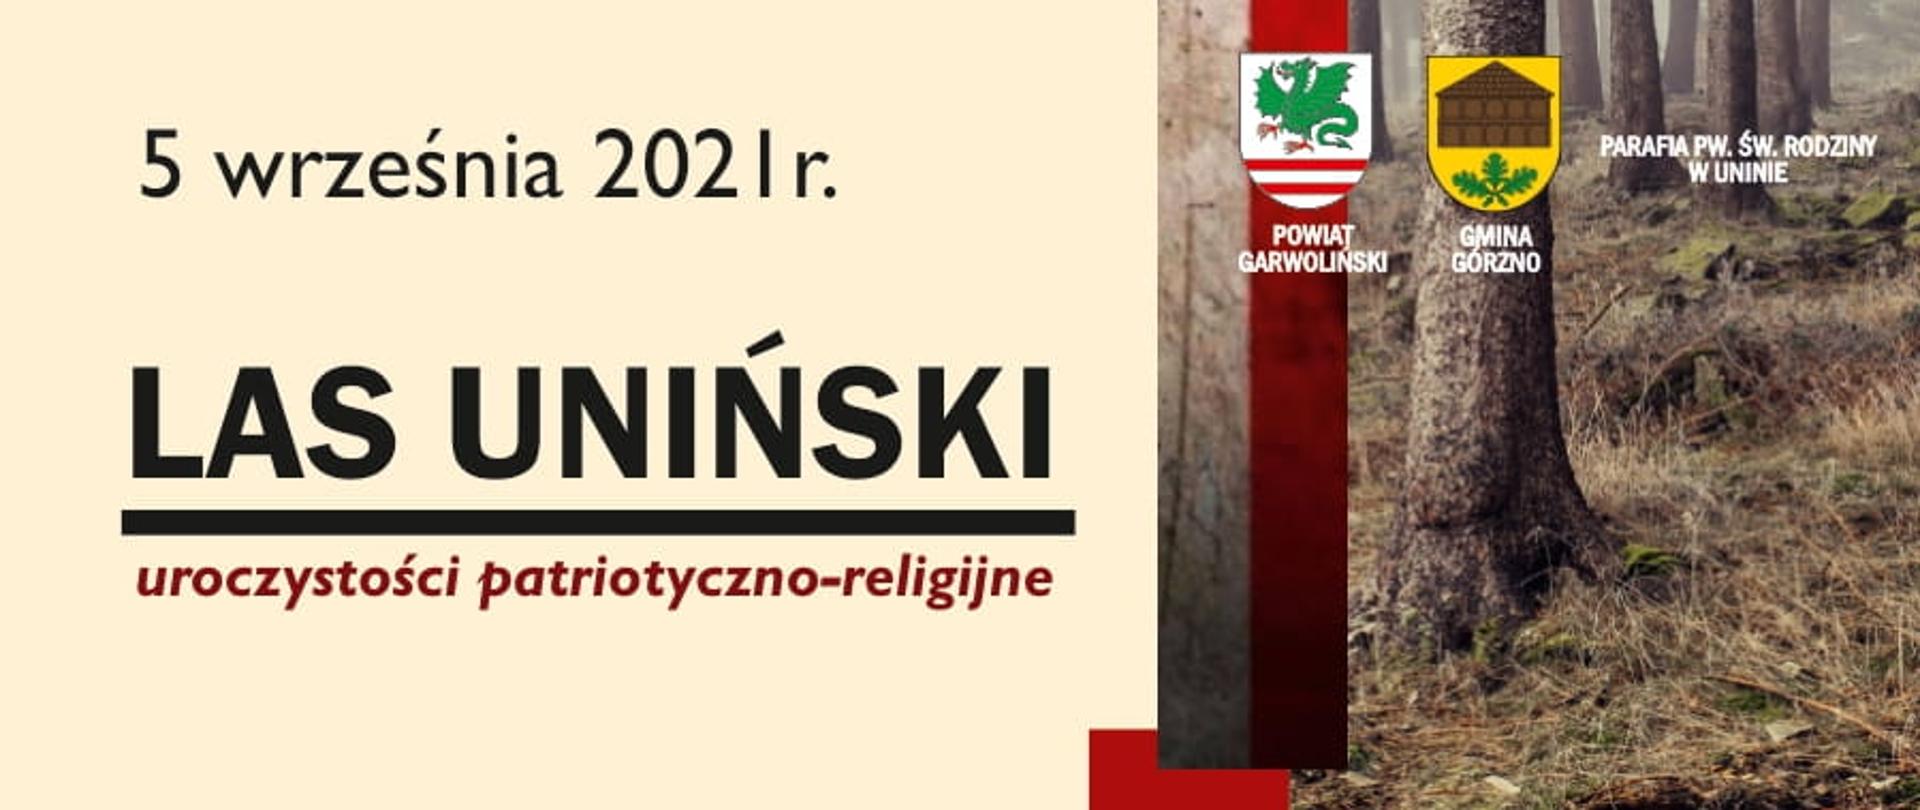 Plakat_Las Uniński 05.09.2021